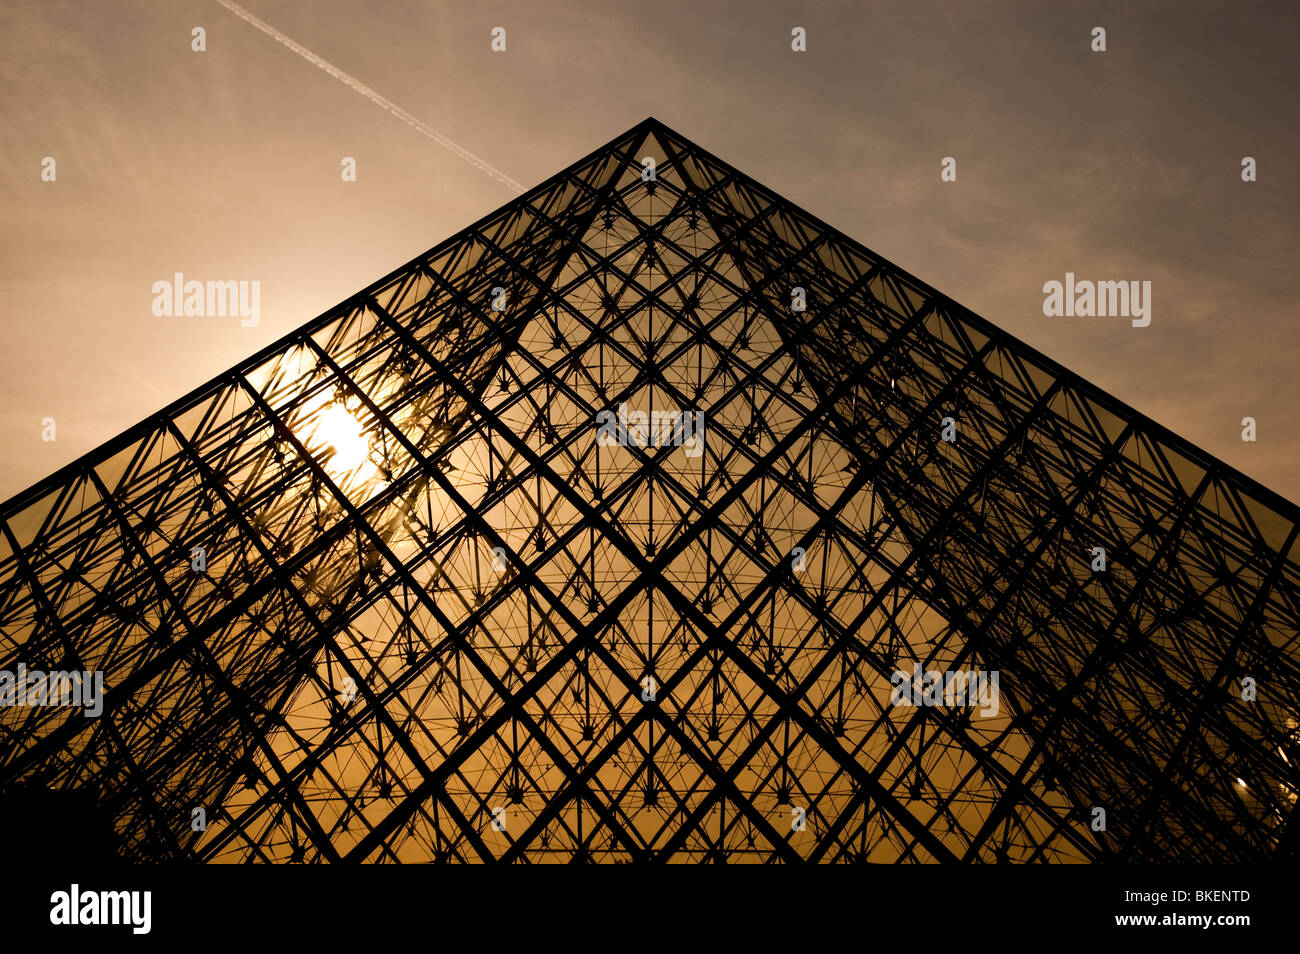 Pyramide du Louvre par l'architecte I.M. Pei, Paris, France Banque D'Images